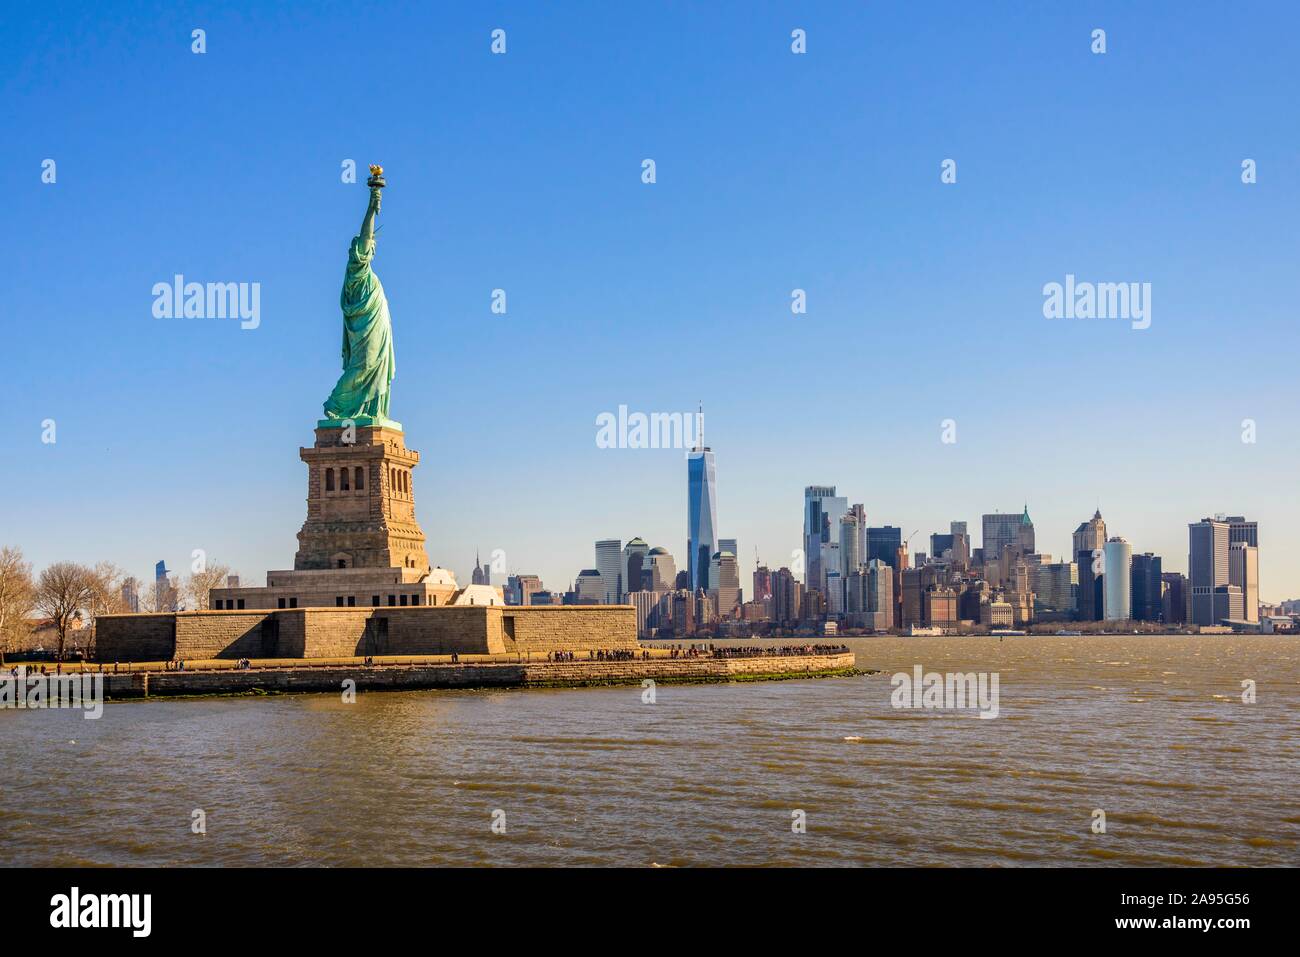 Statue de la liberté en face de Manhattan, Statue de la Liberté Monument National, Liberty Island, New York City, New York State, USA Banque D'Images